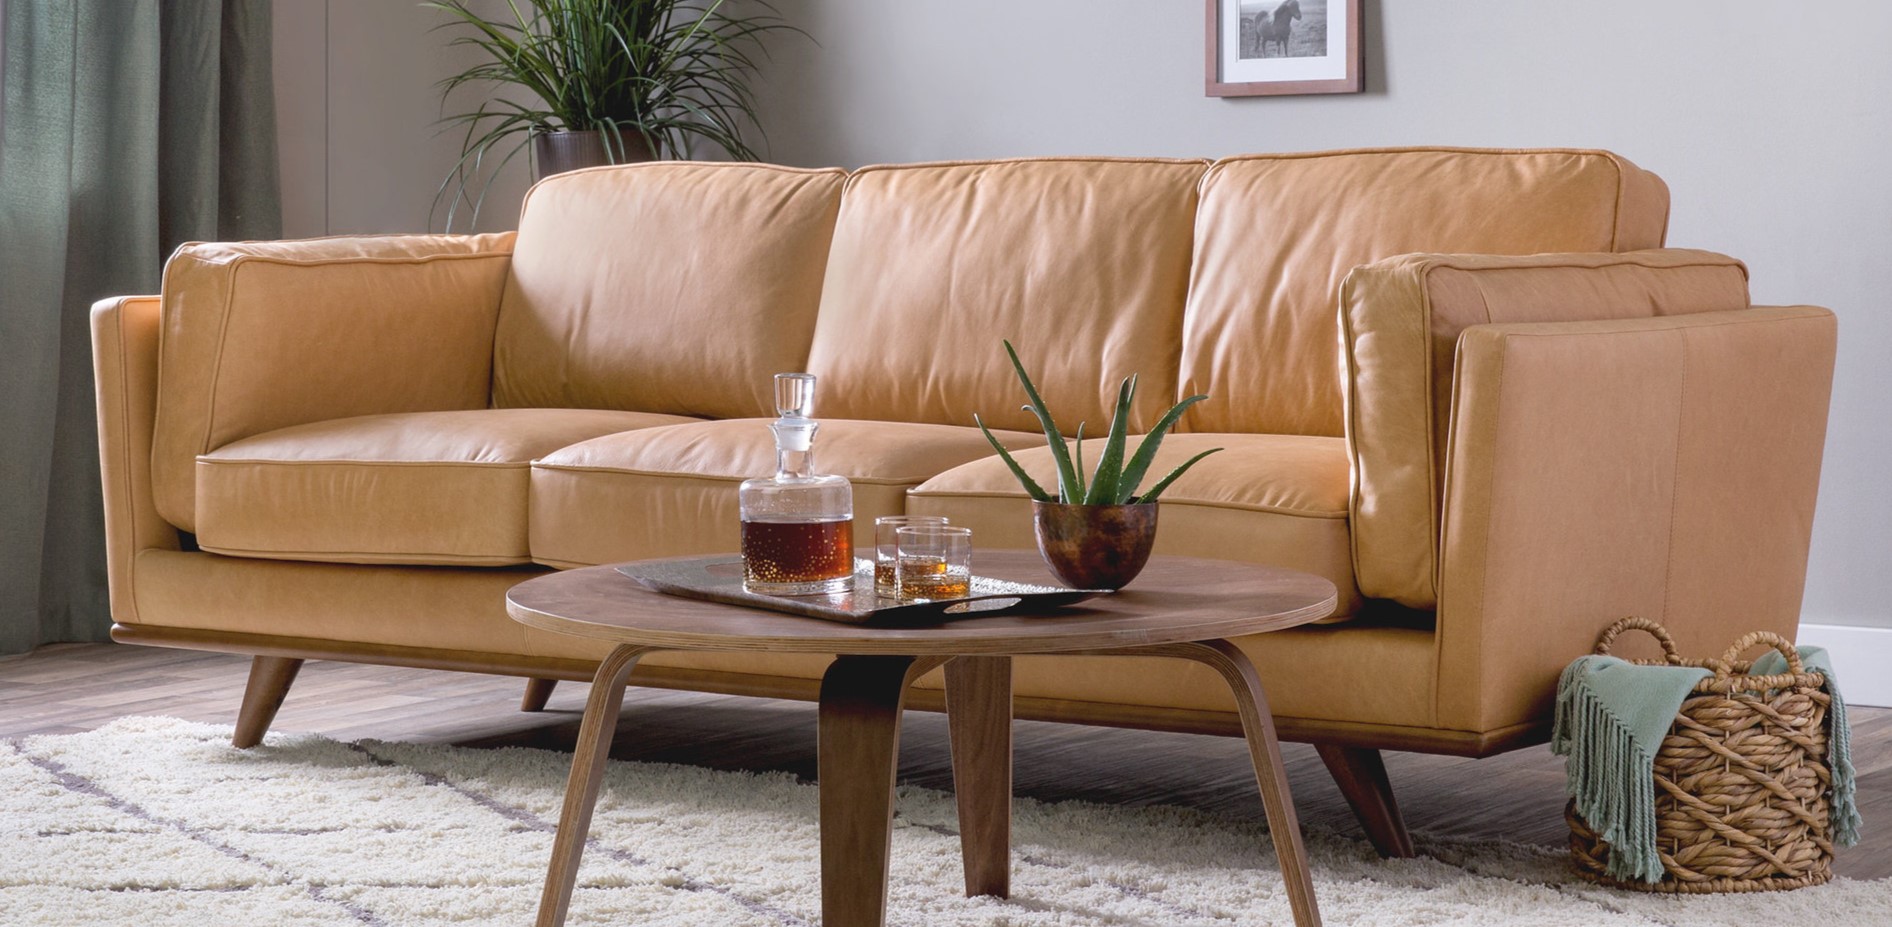 Светло-коричневый диван подойдет для интерьера современной гостиной